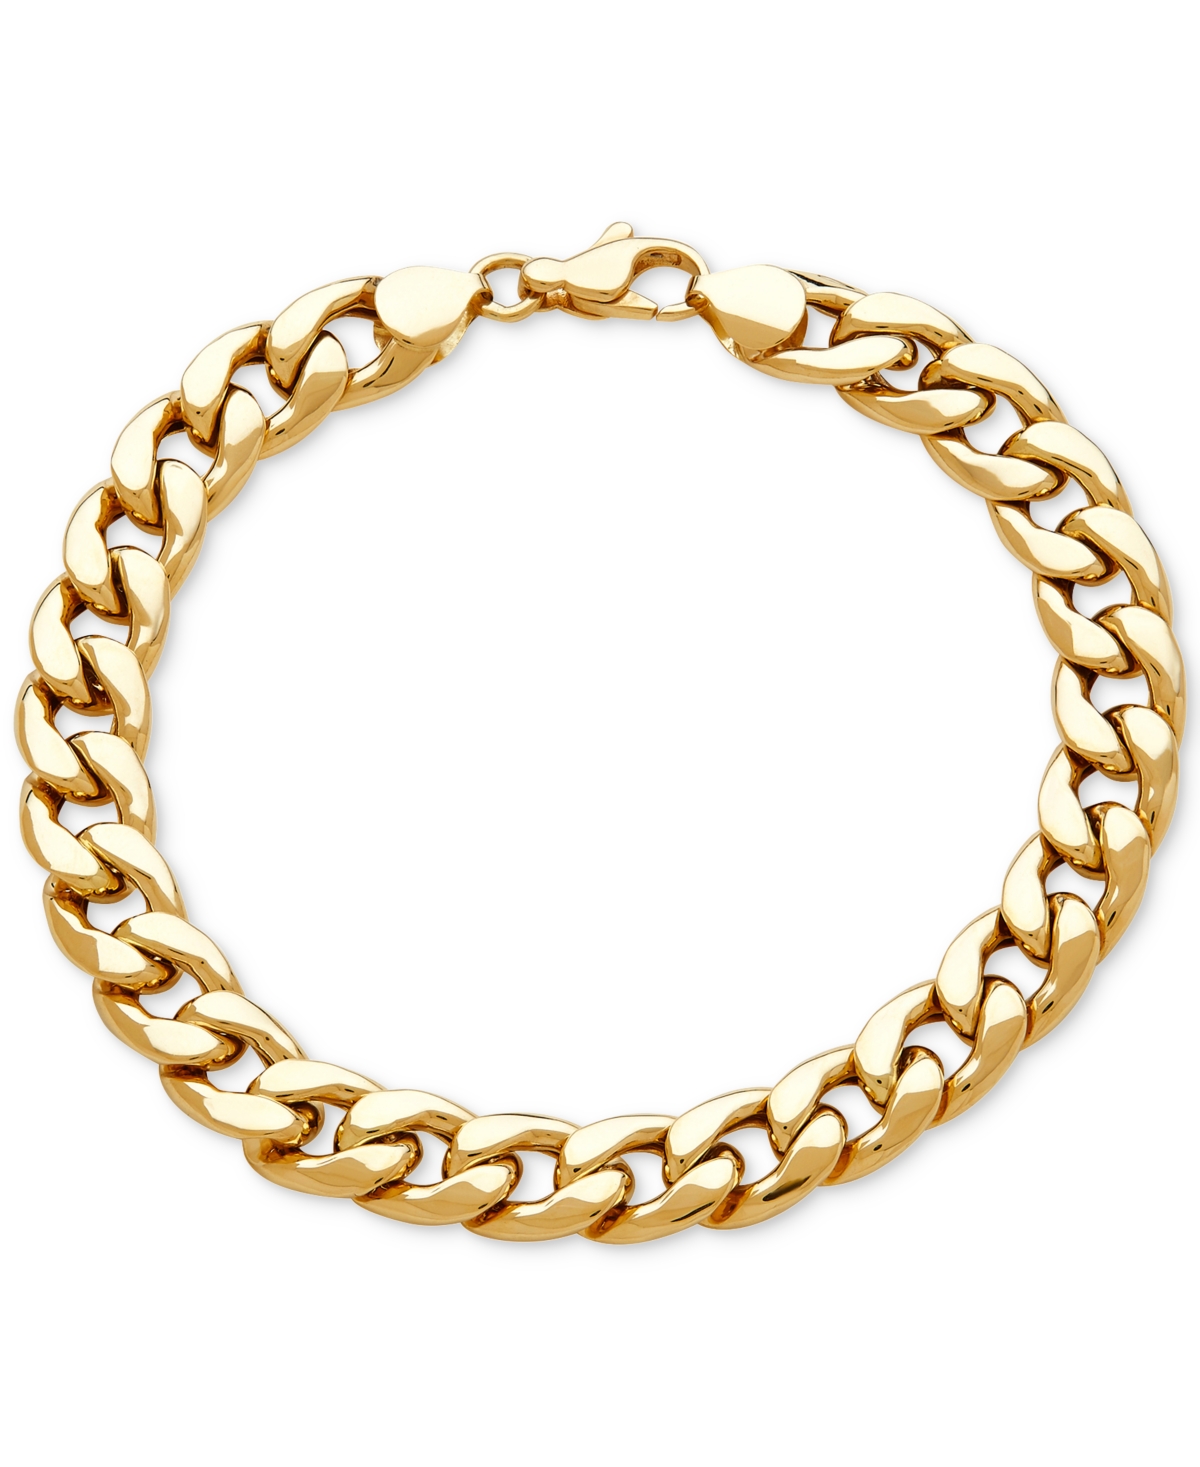 Italian Gold Men's Heavy Curb Link Bracelet in 10k Gold